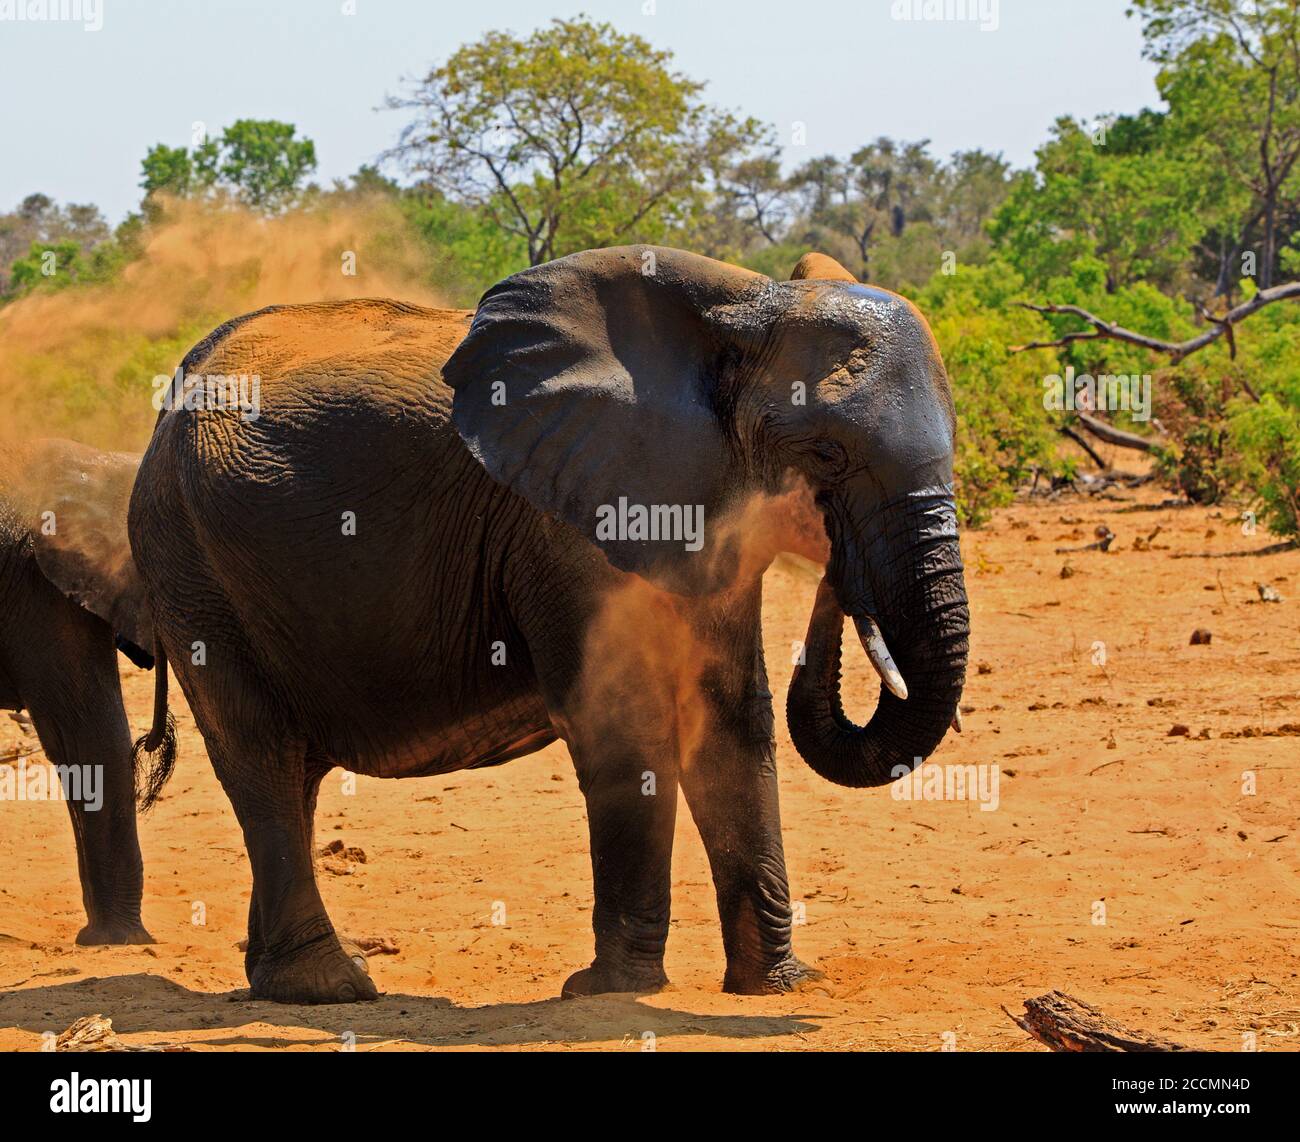 Große afrikanische Elefant bläst Staub über sich, Elefanten tun dies, um ihre Haut vor der sengenden afrikanischen Sonne zu schützen. Hwange National Park, Simbabw Stockfoto